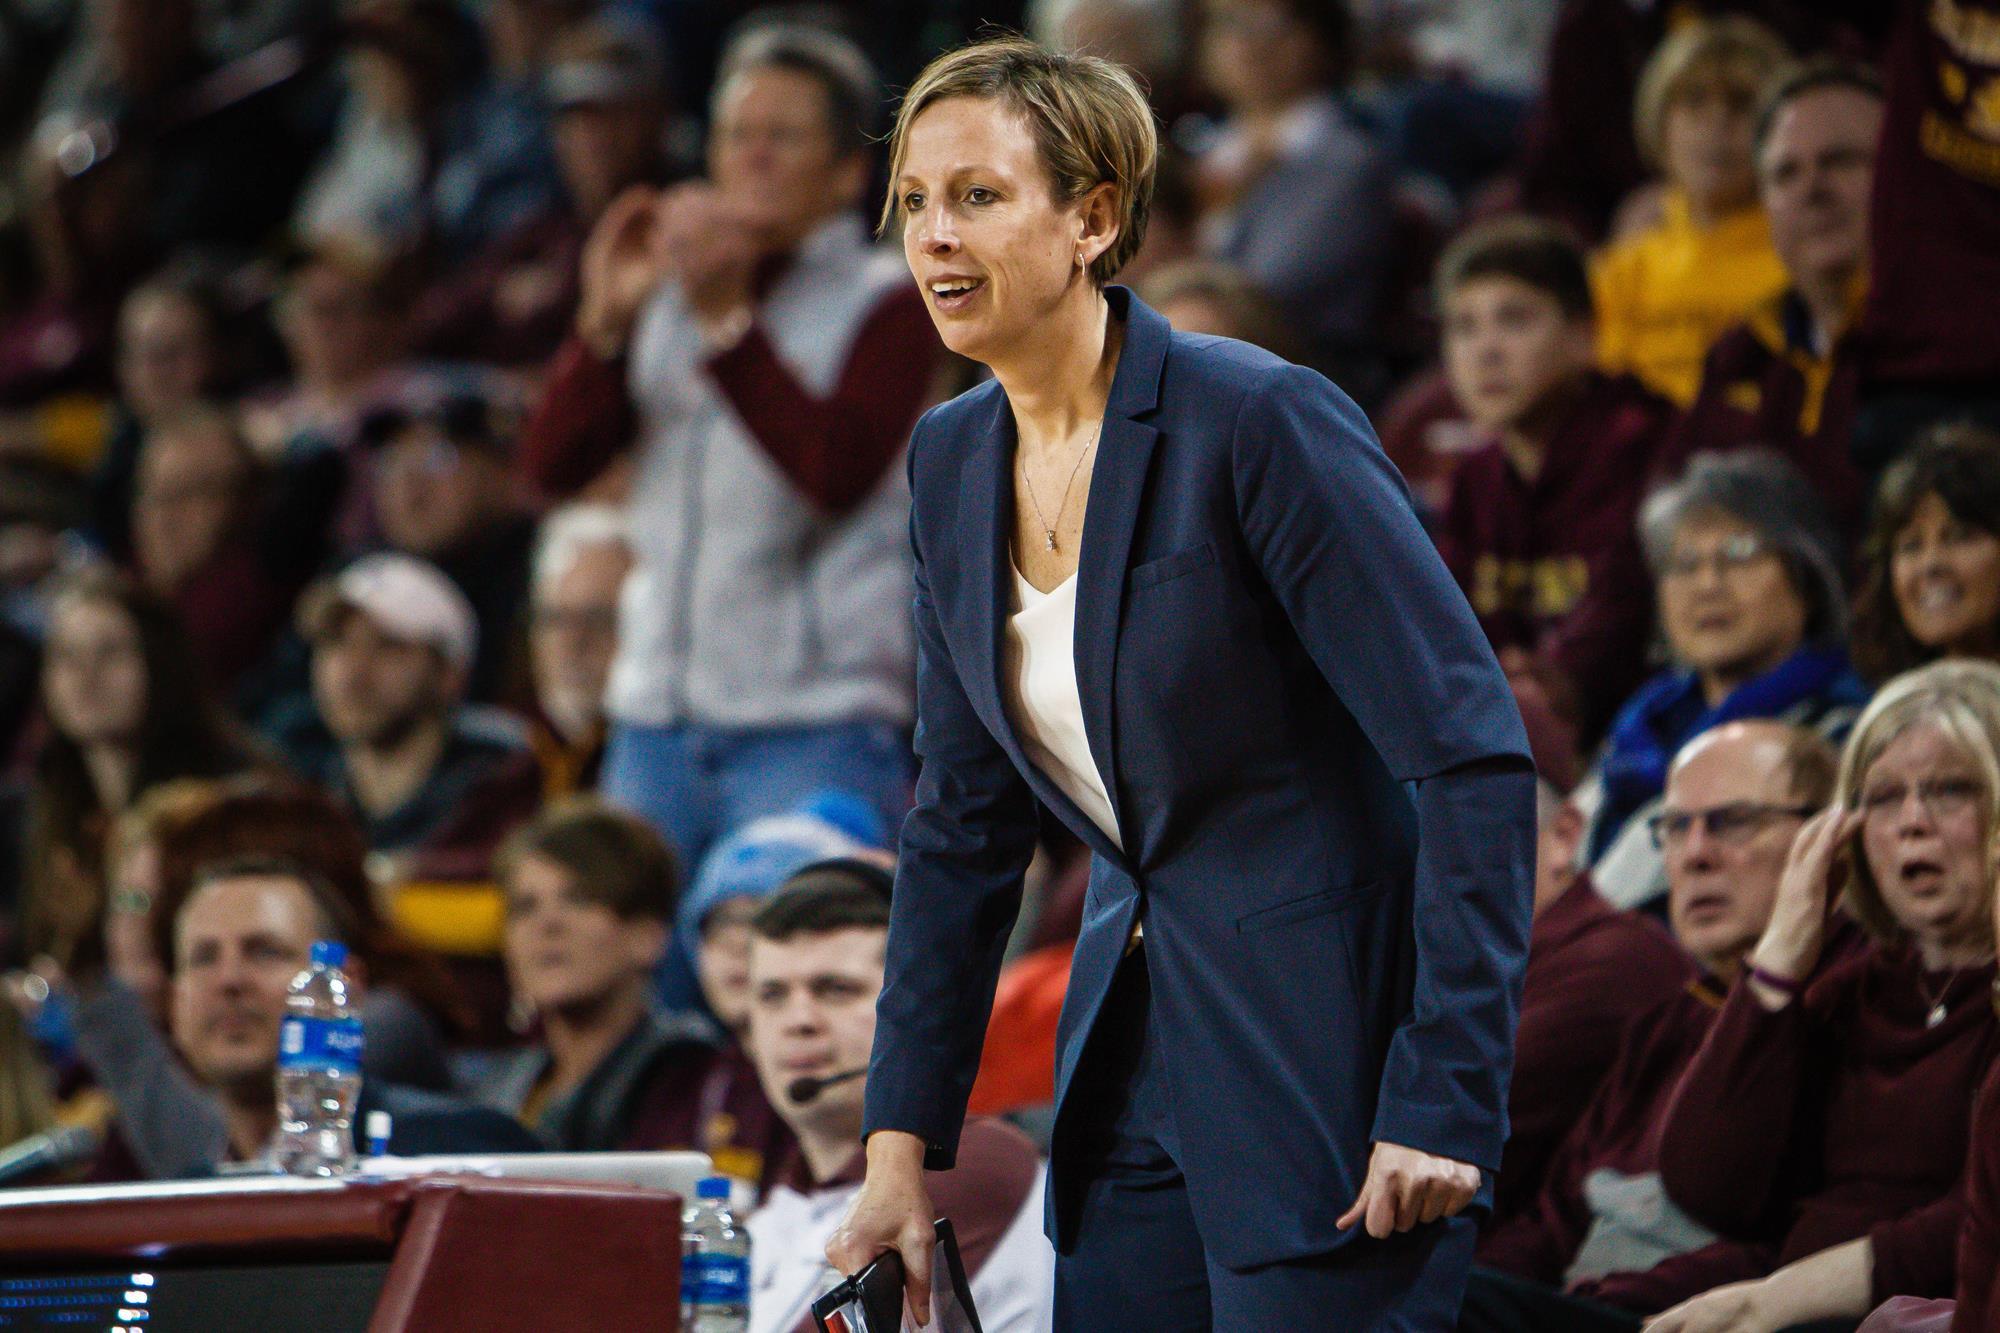 Coach G, CMU’s winningest women’s basketball coach, retires after 12